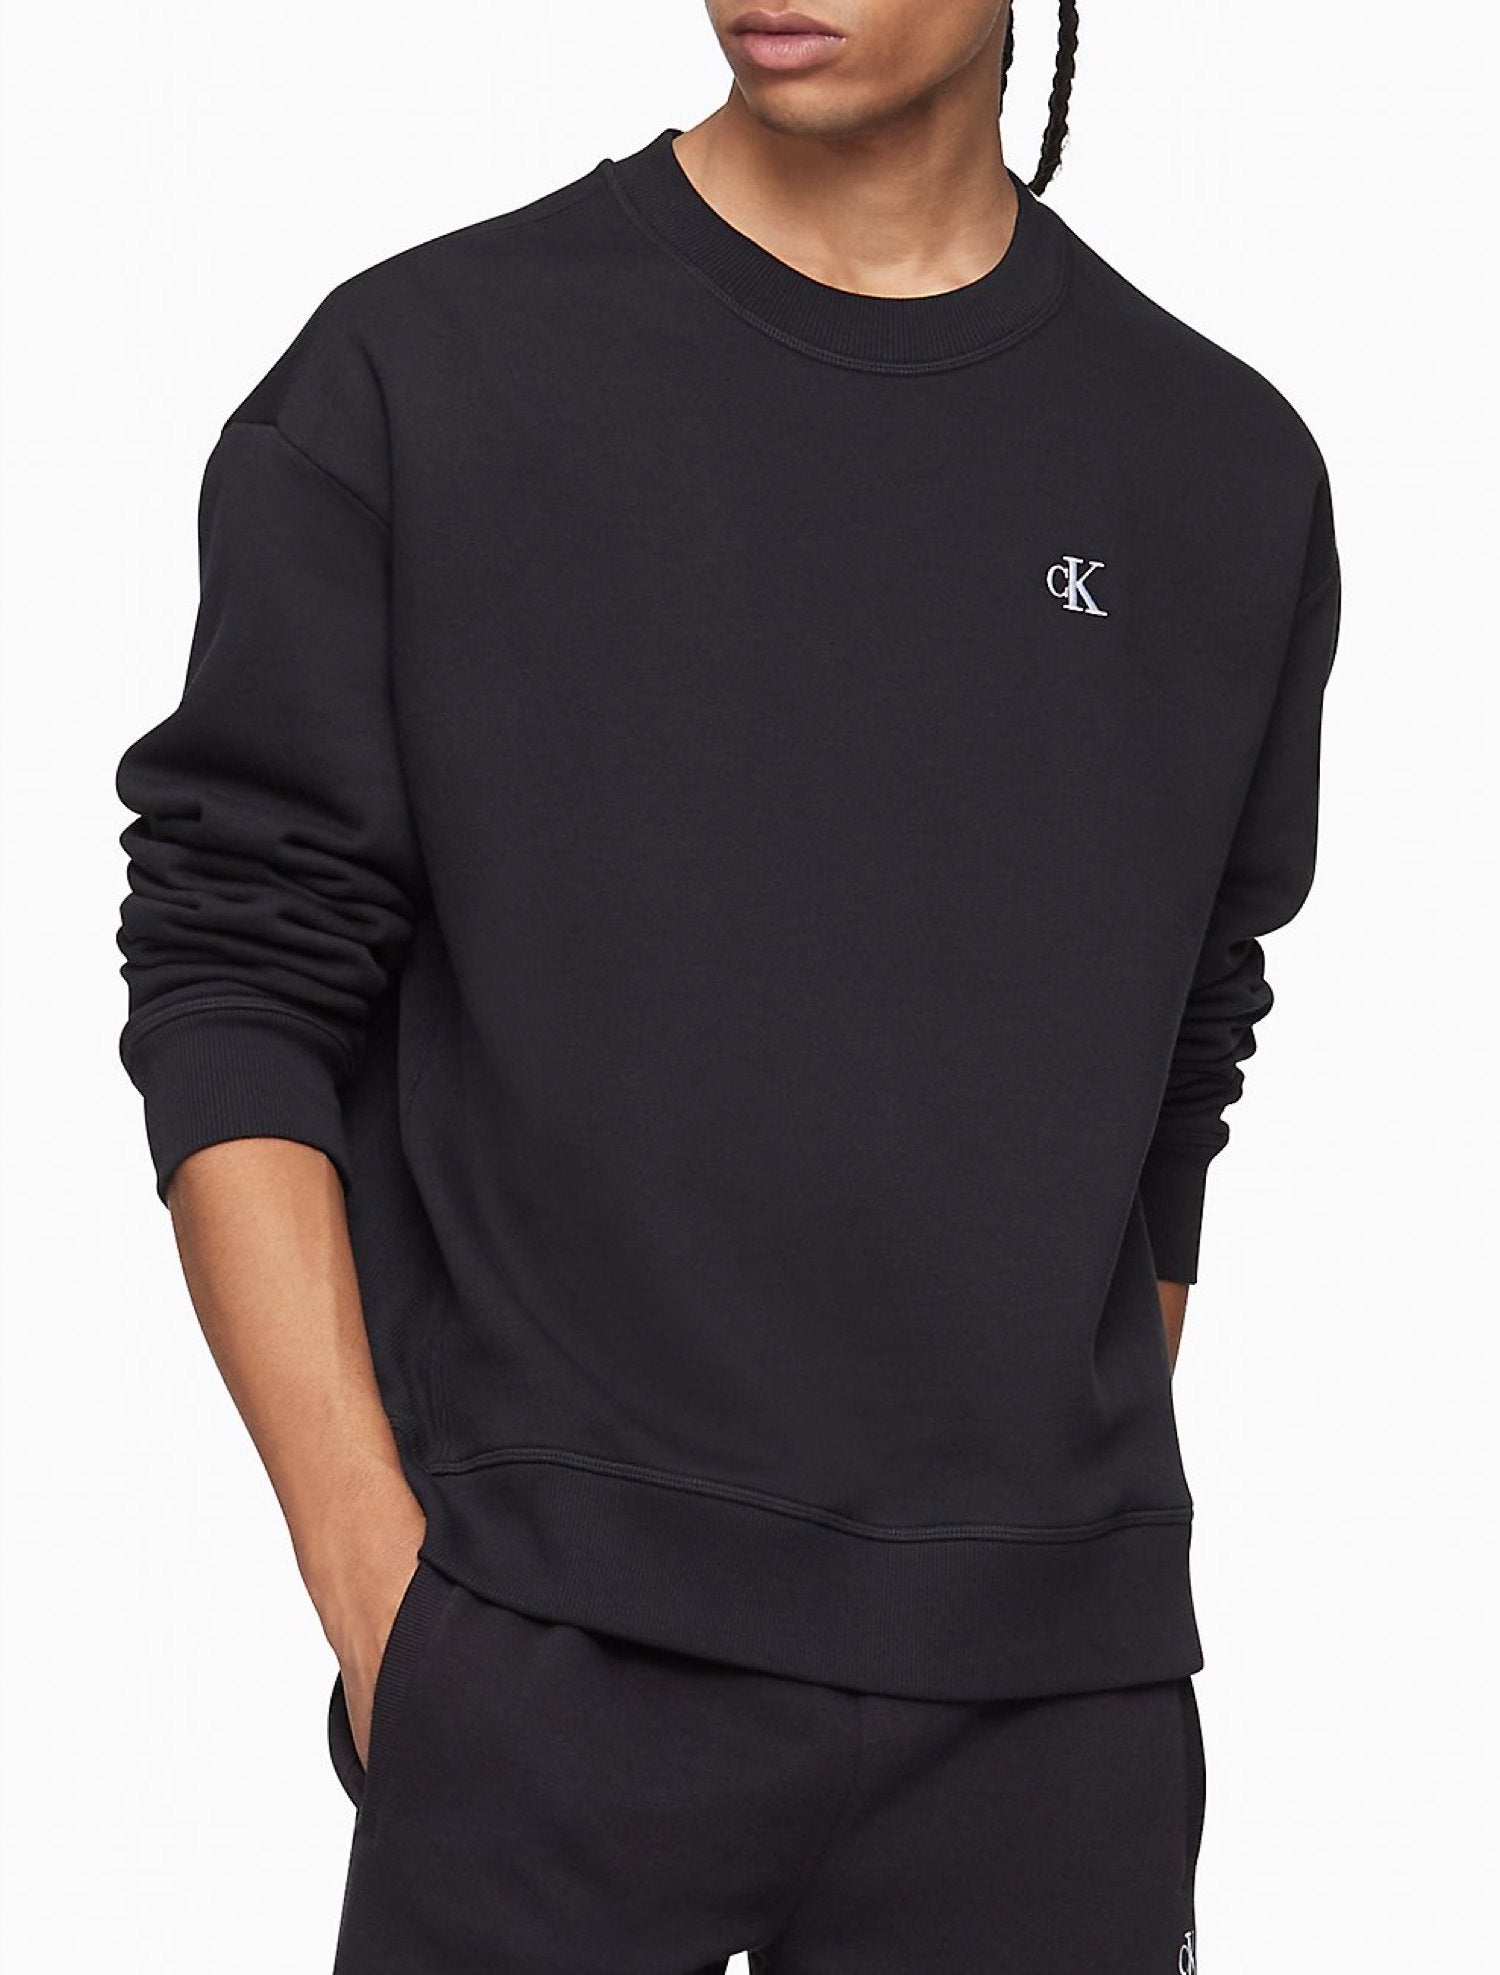 Calvin Klein Men's Monogram Logo Jogger Sweatpants, Heroic Grey Heather,  X-Large at  Men's Clothing store